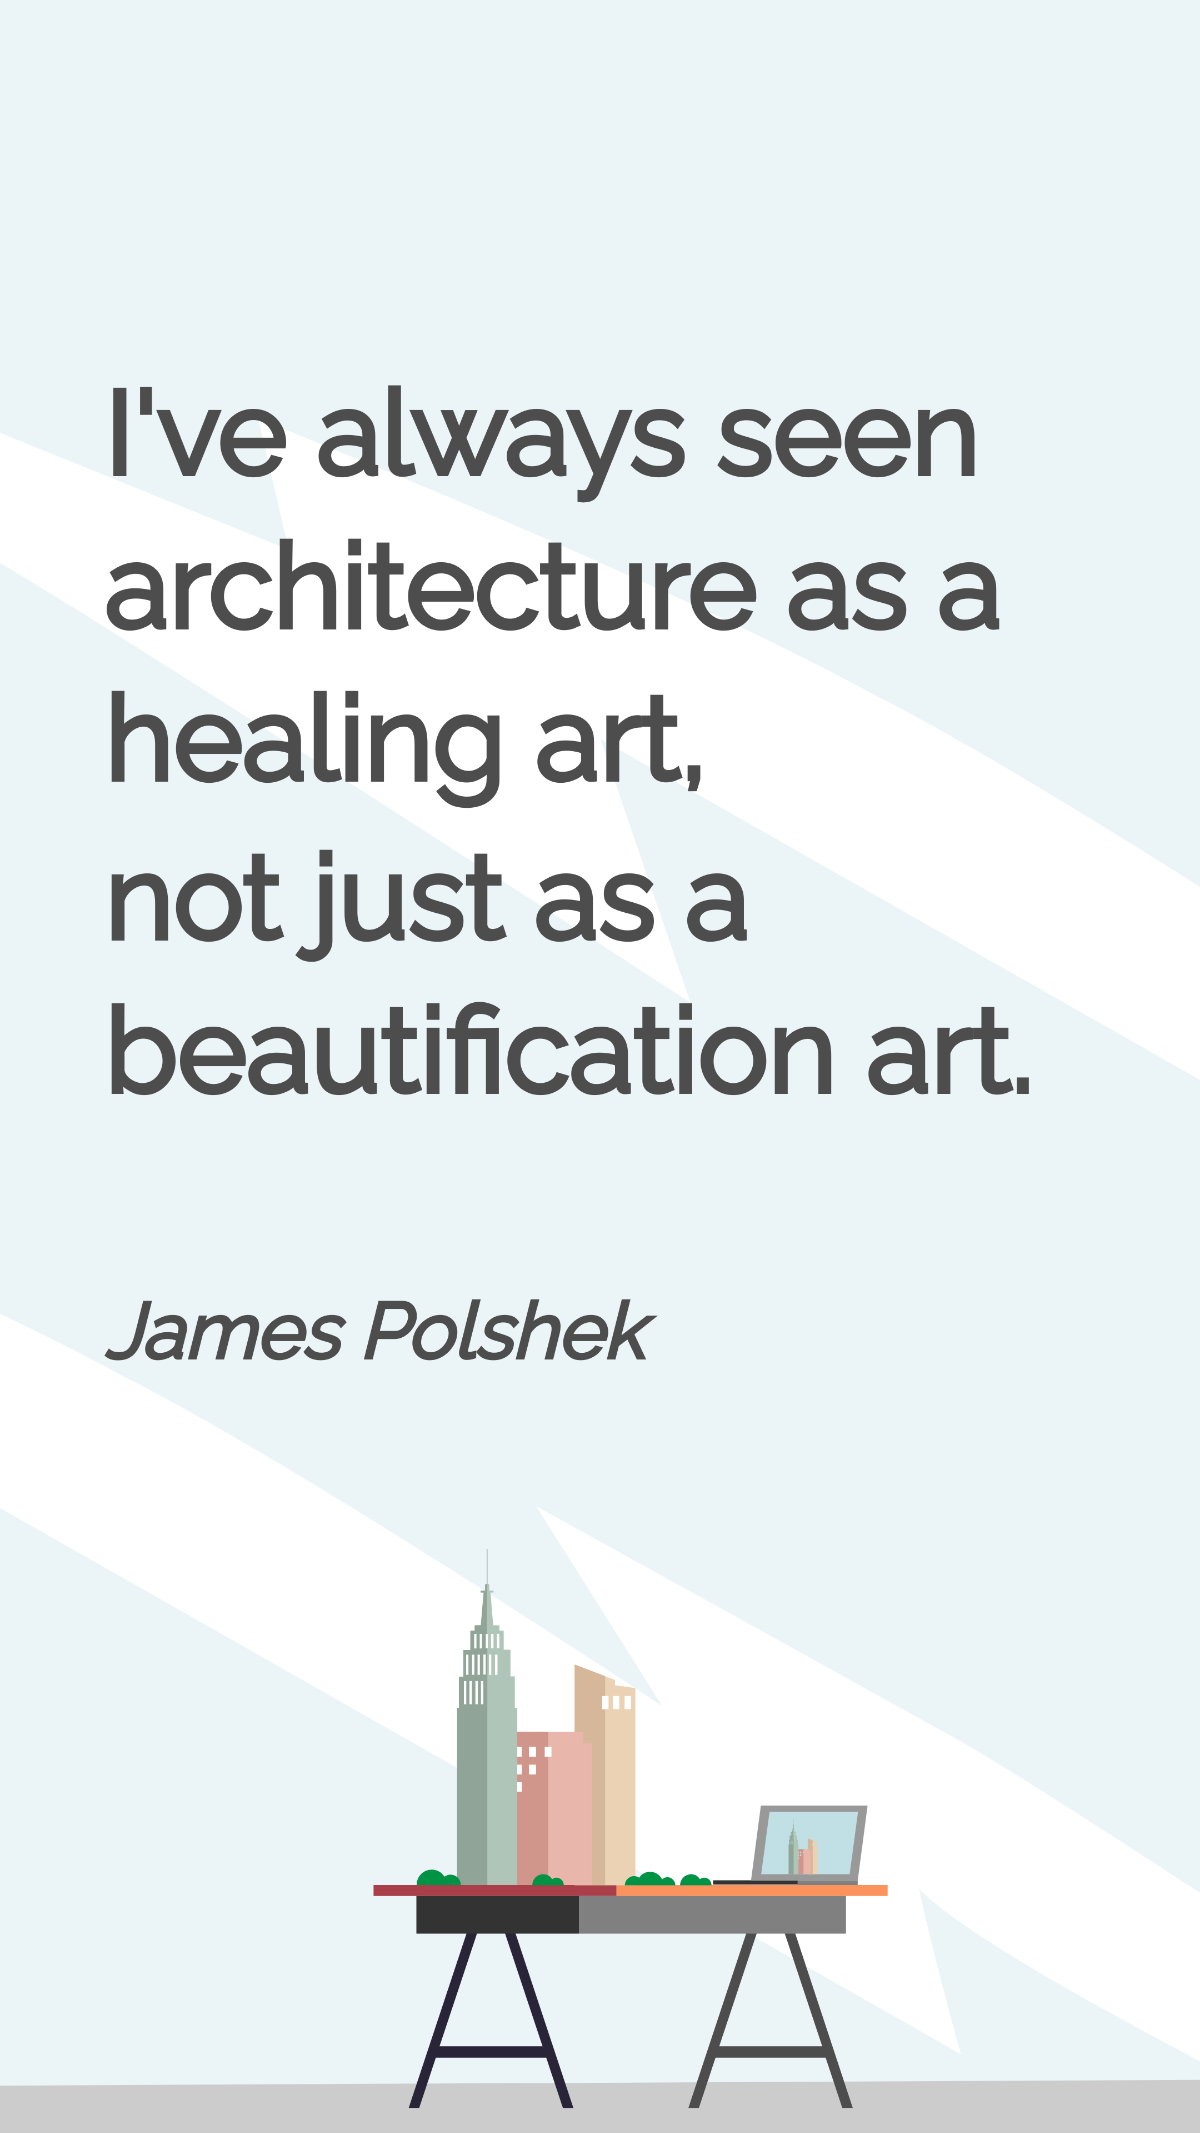 James Polshek - I've always seen architecture as a healing art, not just as a beautification art. Template